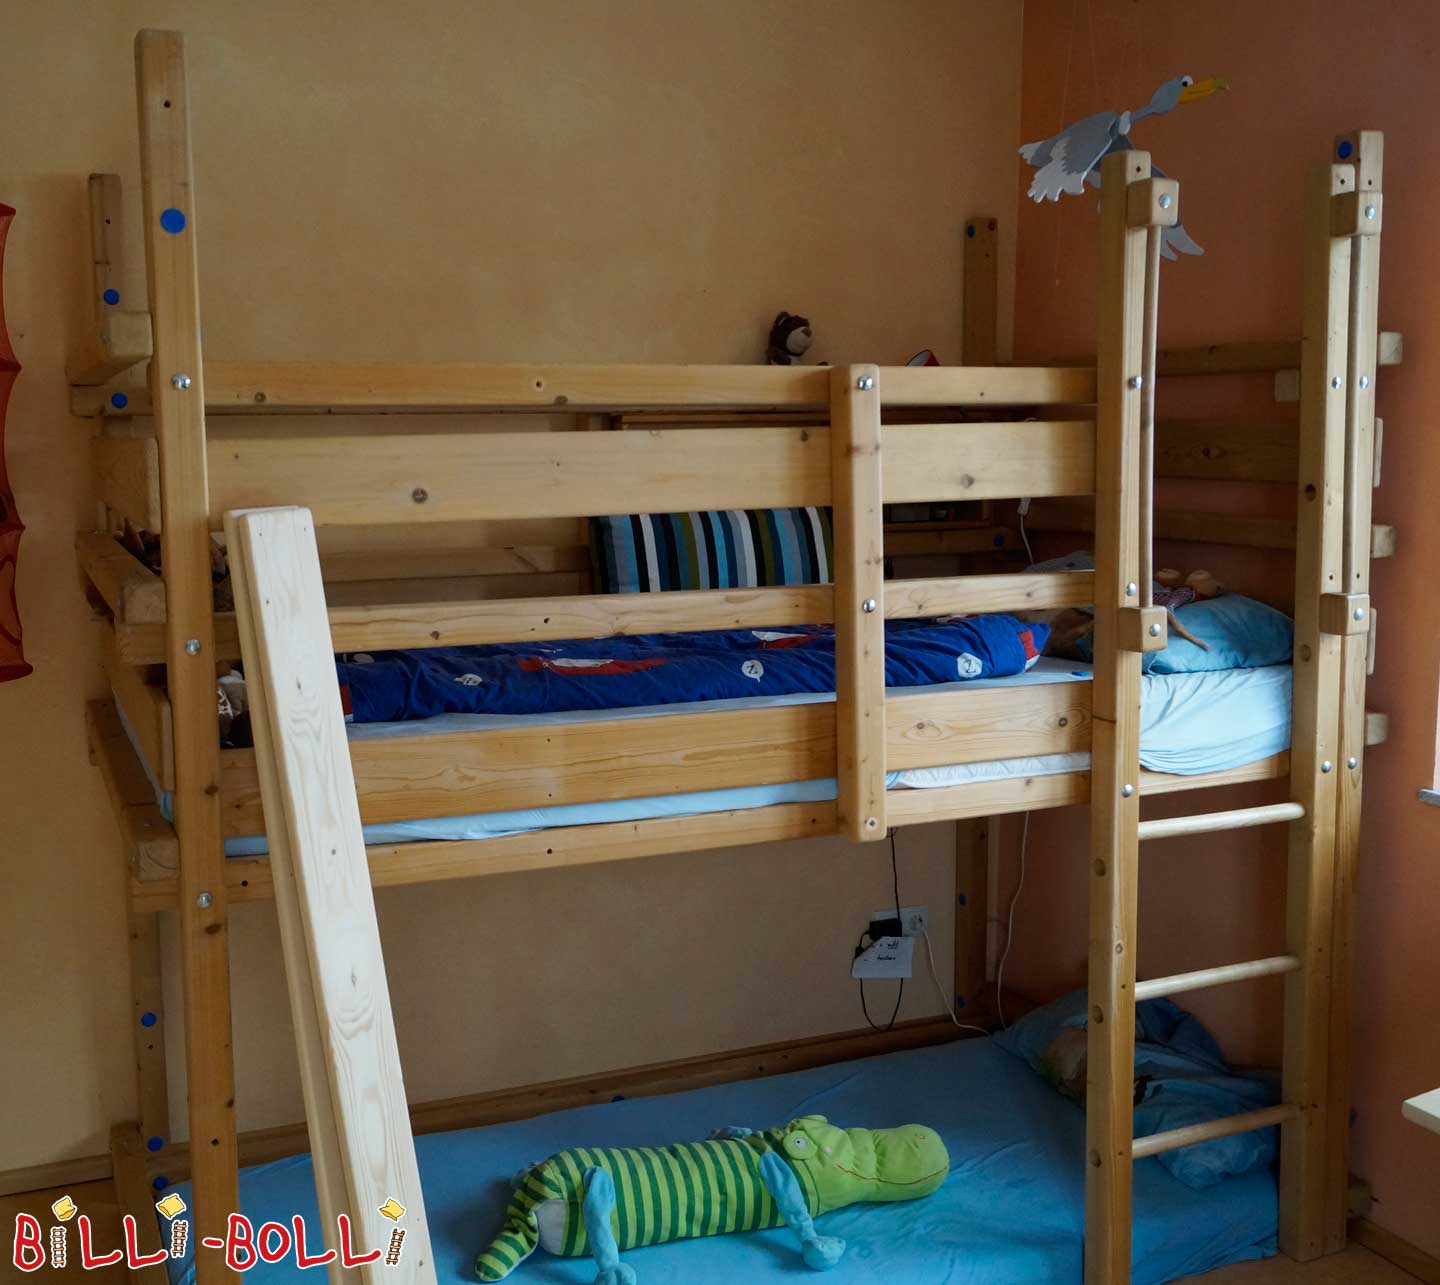 Dobro urejena podstrešna postelja, ki raste z otrokom (Kategorija: Uporabljeno podstrešno ležišče)